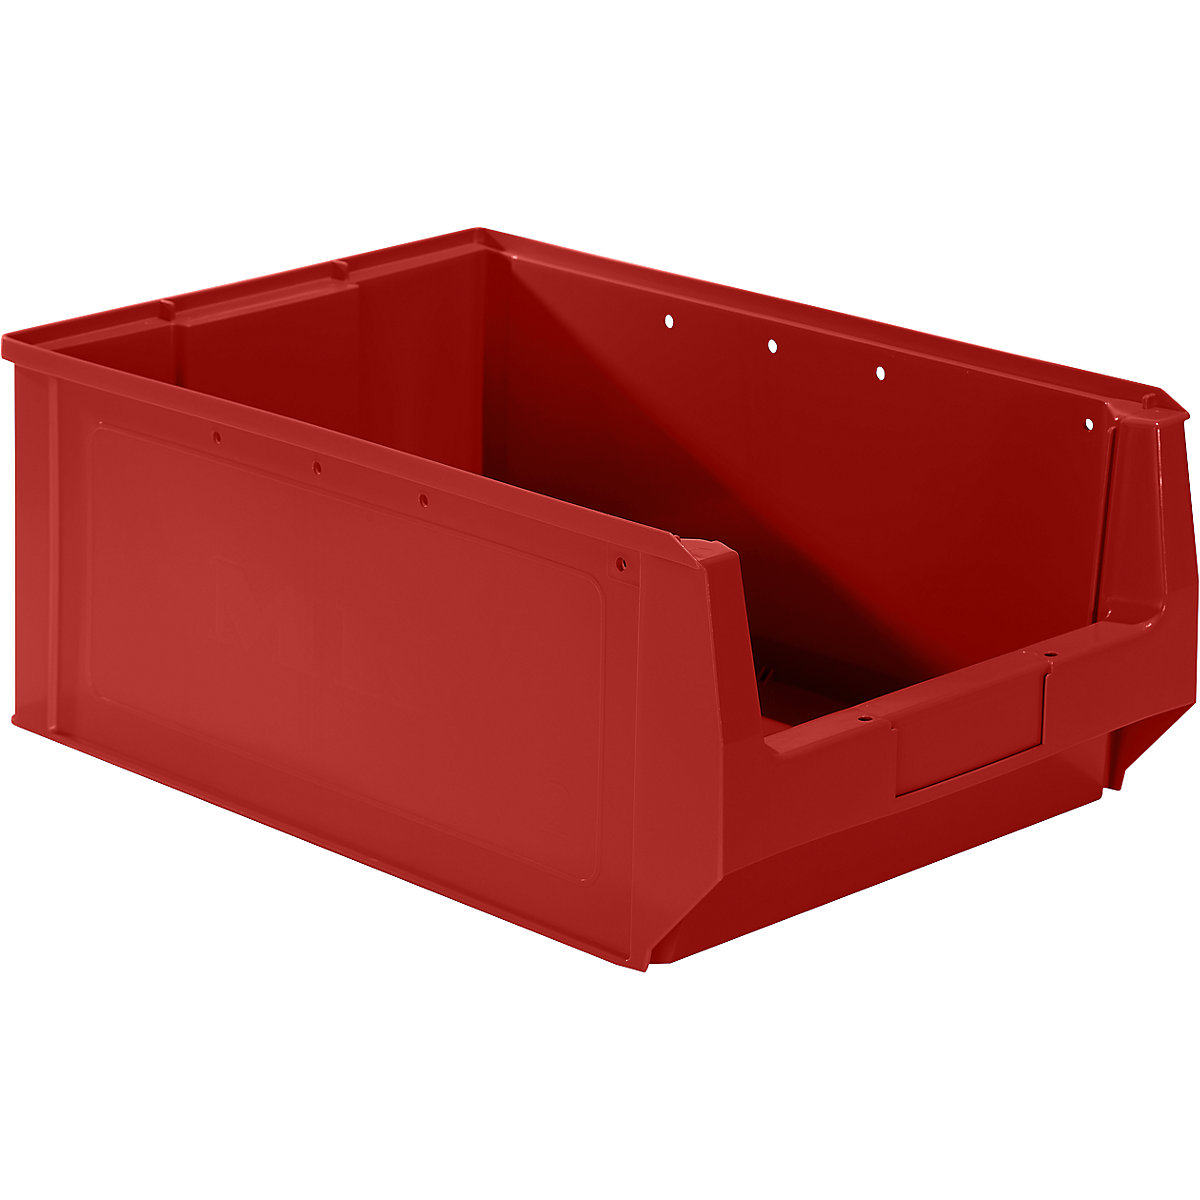 Odprta skladiščna posoda iz polietilena – mauser, DxŠxV 500 x 310 x 200 mm, rdeča, DE 10 kosov-6